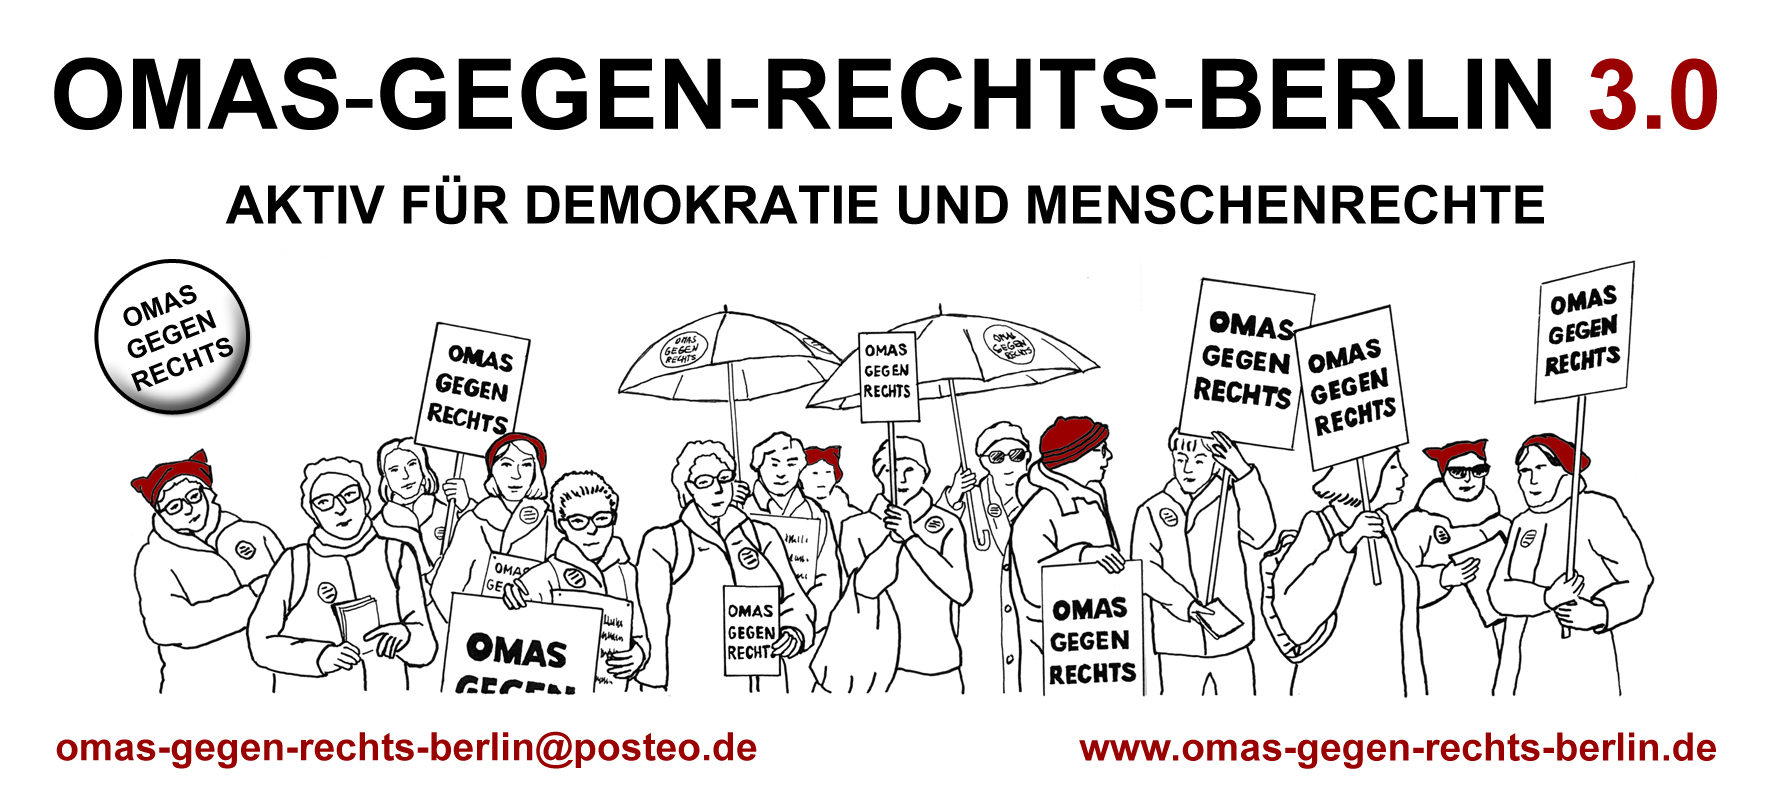 (c) Omas-gegen-rechts-berlin.de